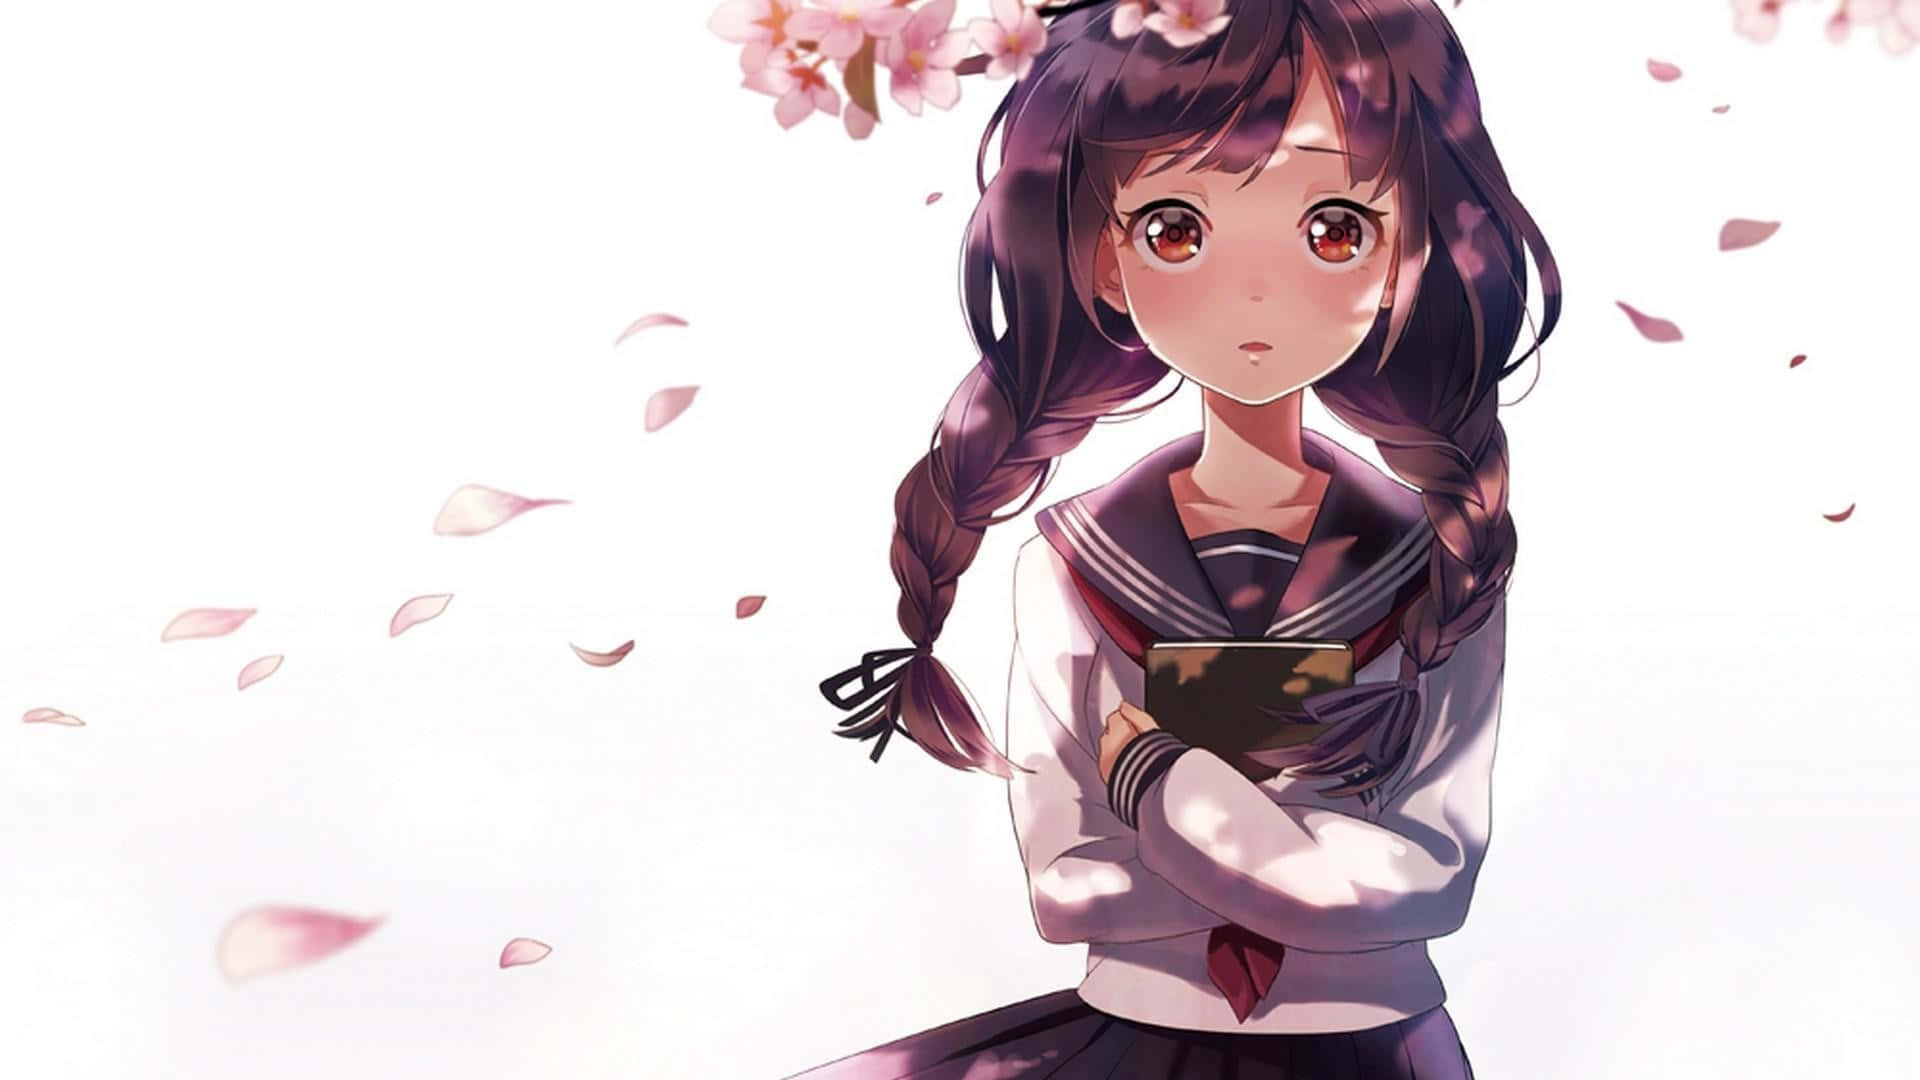 Anime Girl Cherry Blossoms Aesthetic.jpg Wallpaper